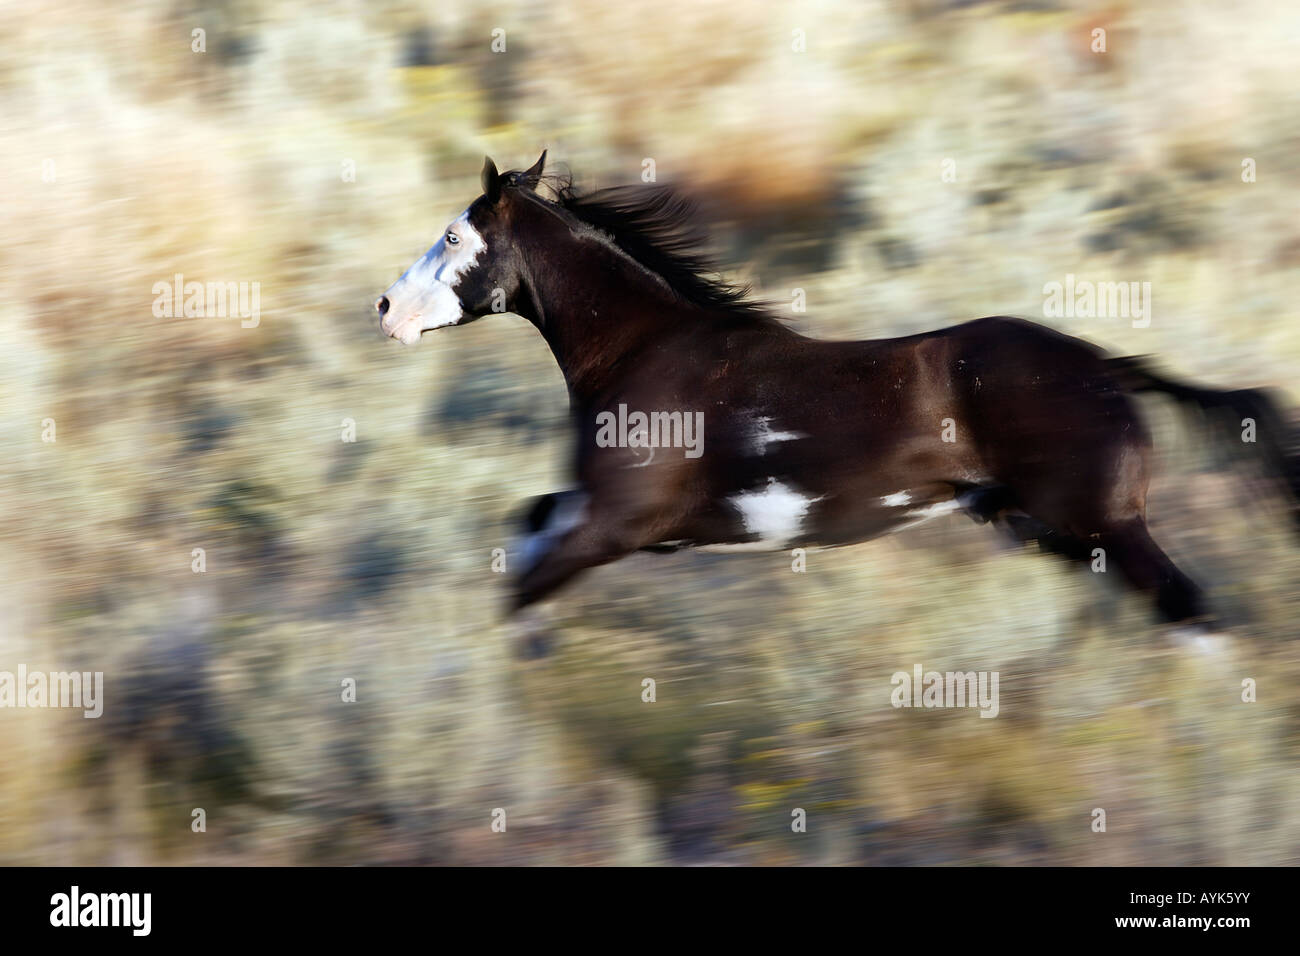 Quarter Horse, Paint Horse (Equus caballus), galloping Stock Photo